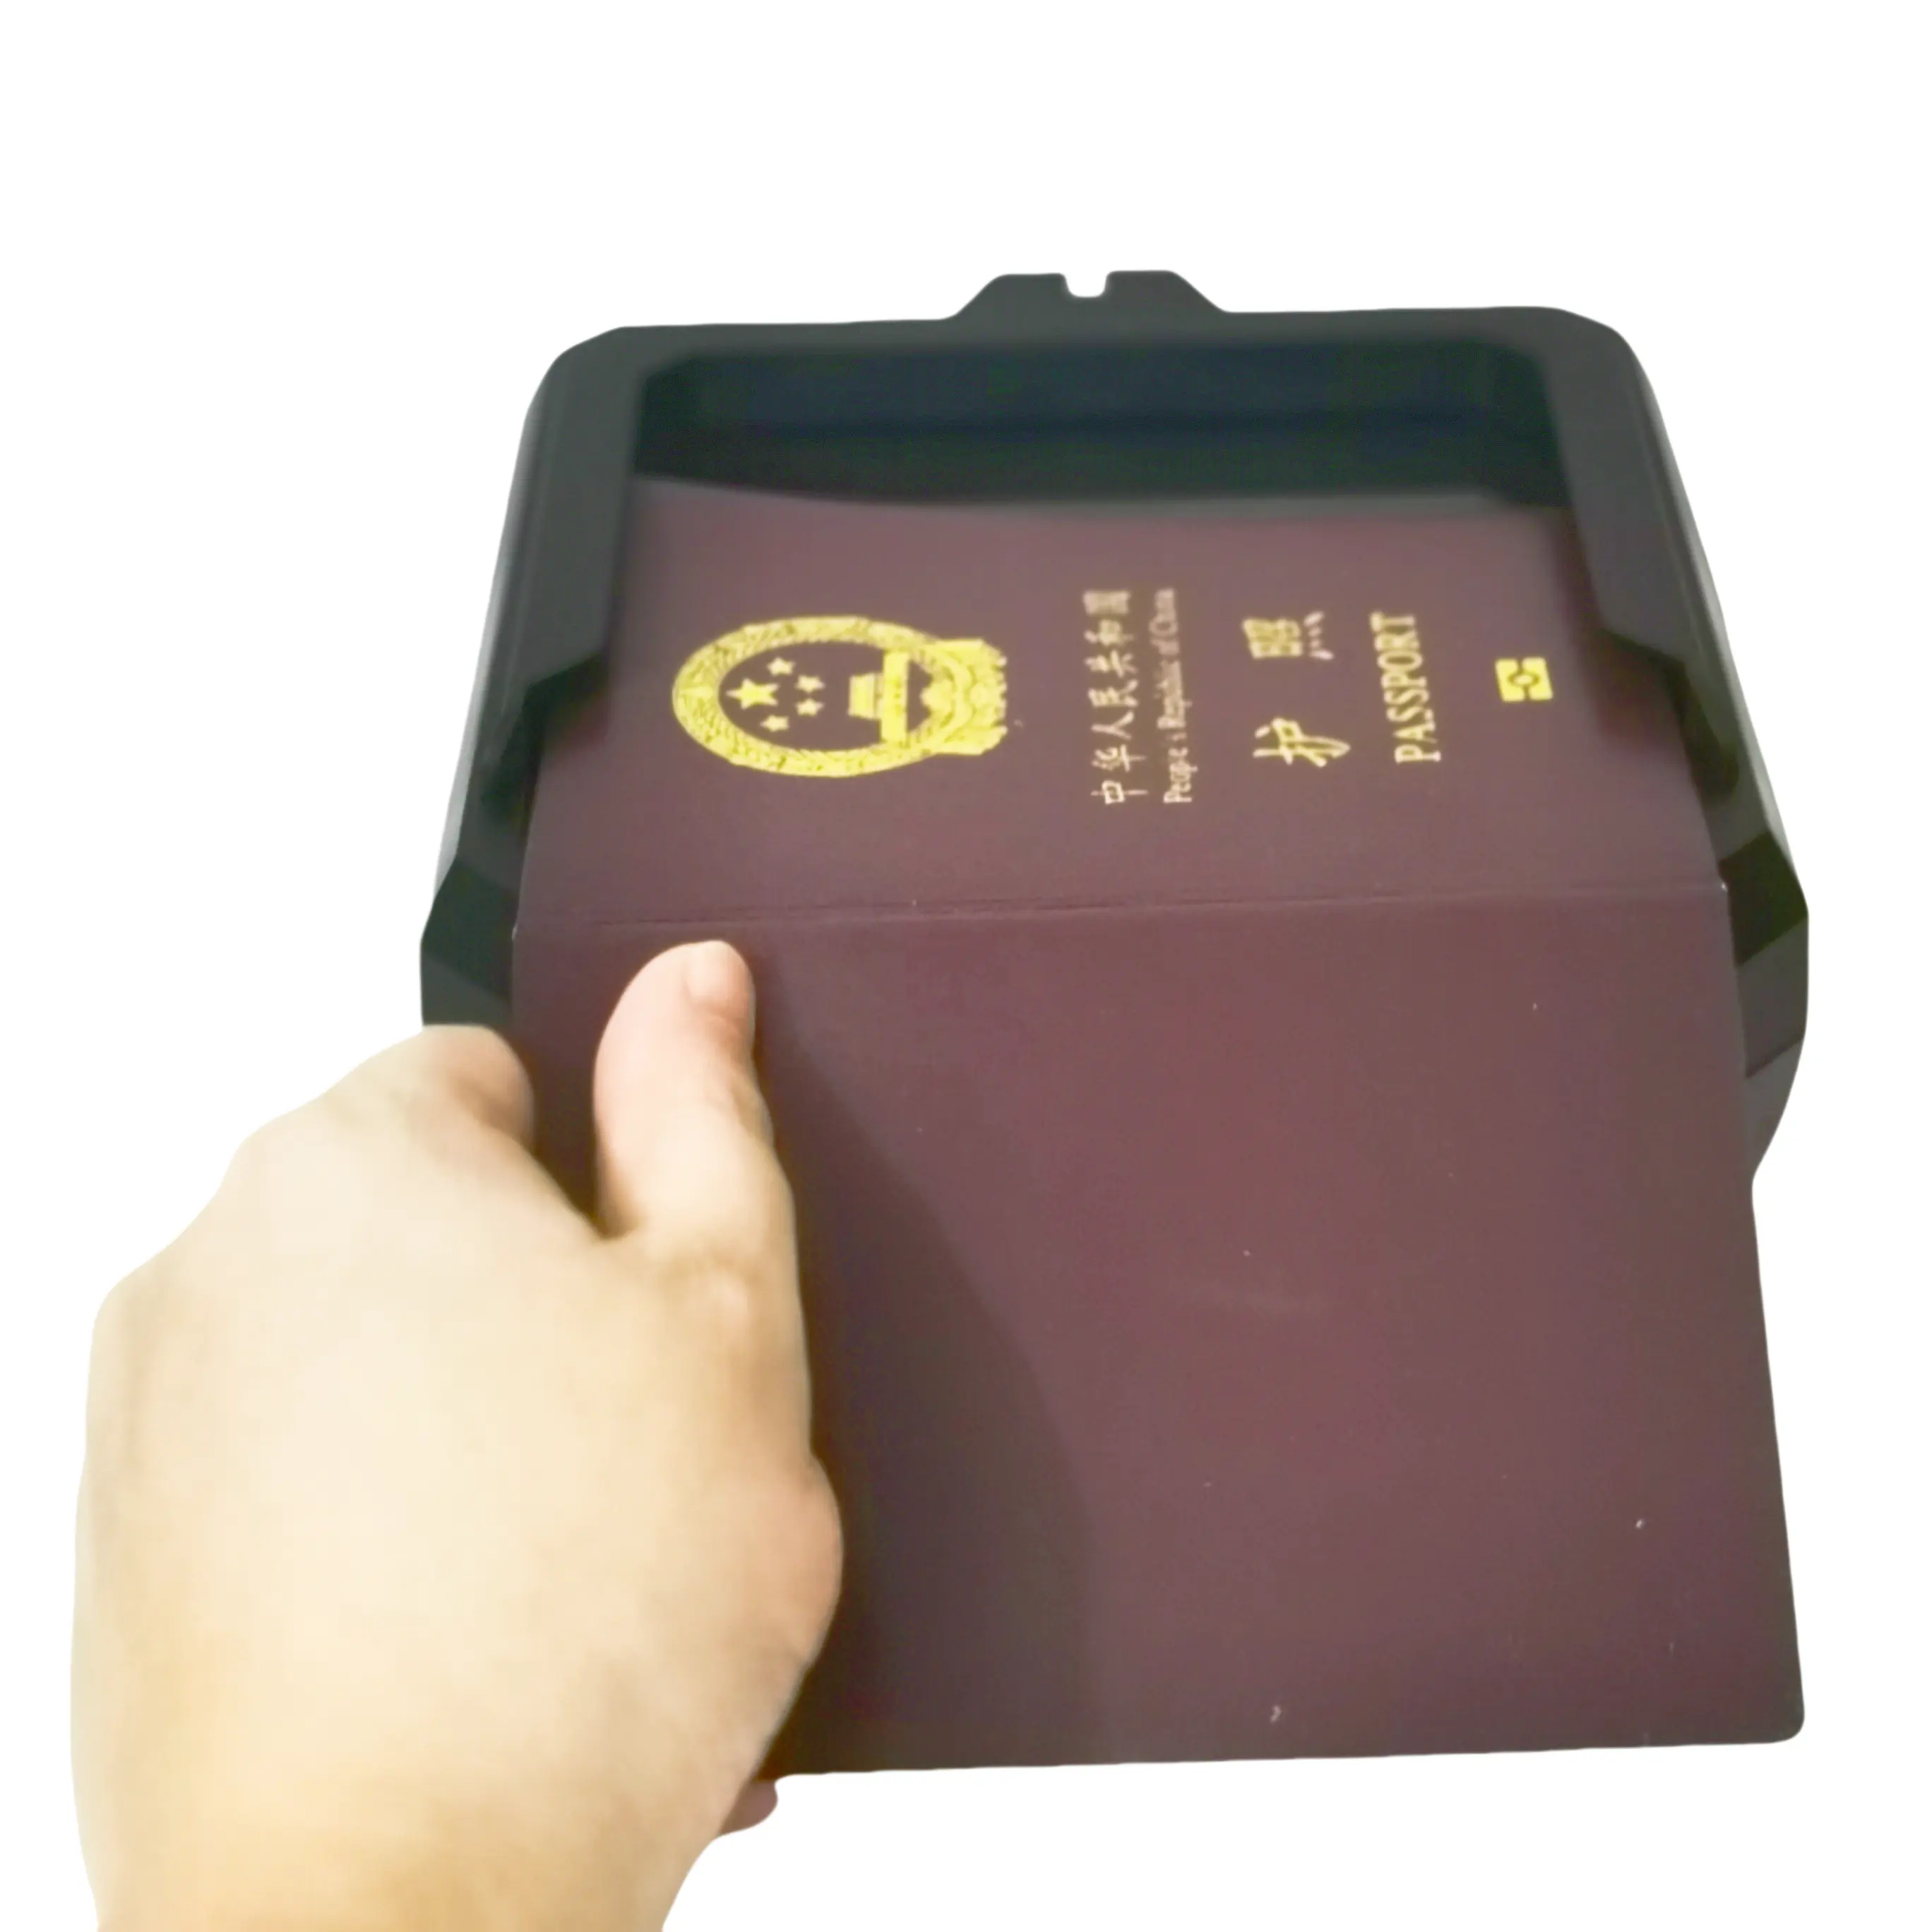 OCR automatischer Hotel-Rechseleser MRZ-Kiosk Führerschein-ID-Kart-Rechselescanner für Flughäfen-Zollzugriffskontrolle